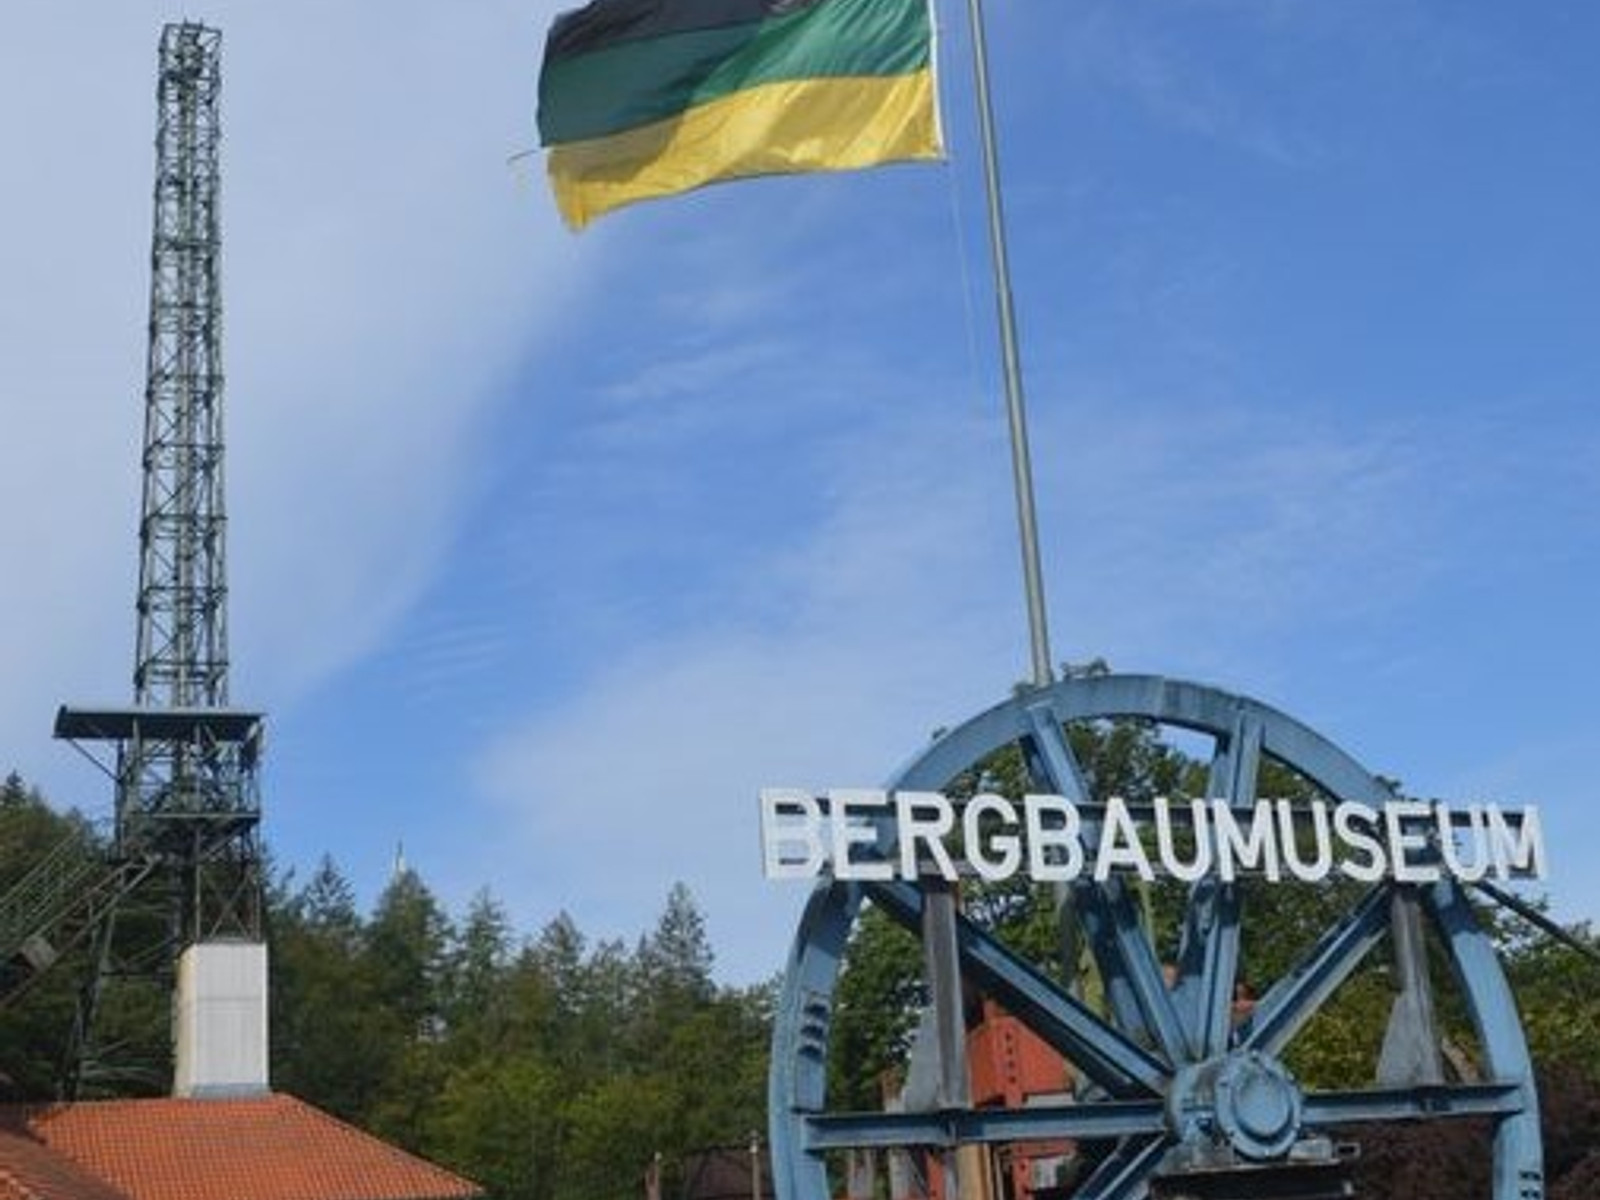 Bergbaumuseum Knesebeck in Bad Grund